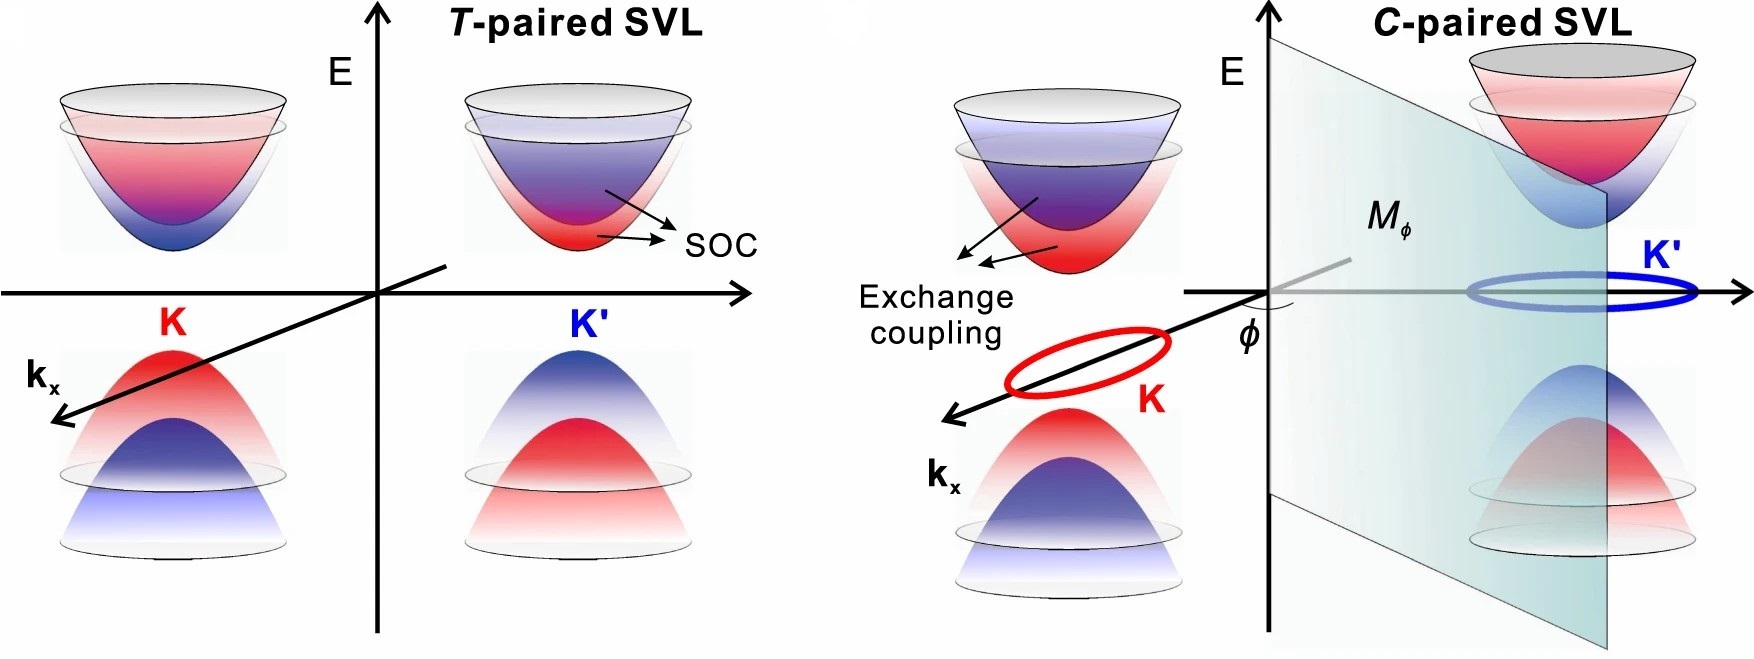 圖 2 (a) T-paired SVL 和 (b) C-paired SVL 的自旋劈裂能帶。